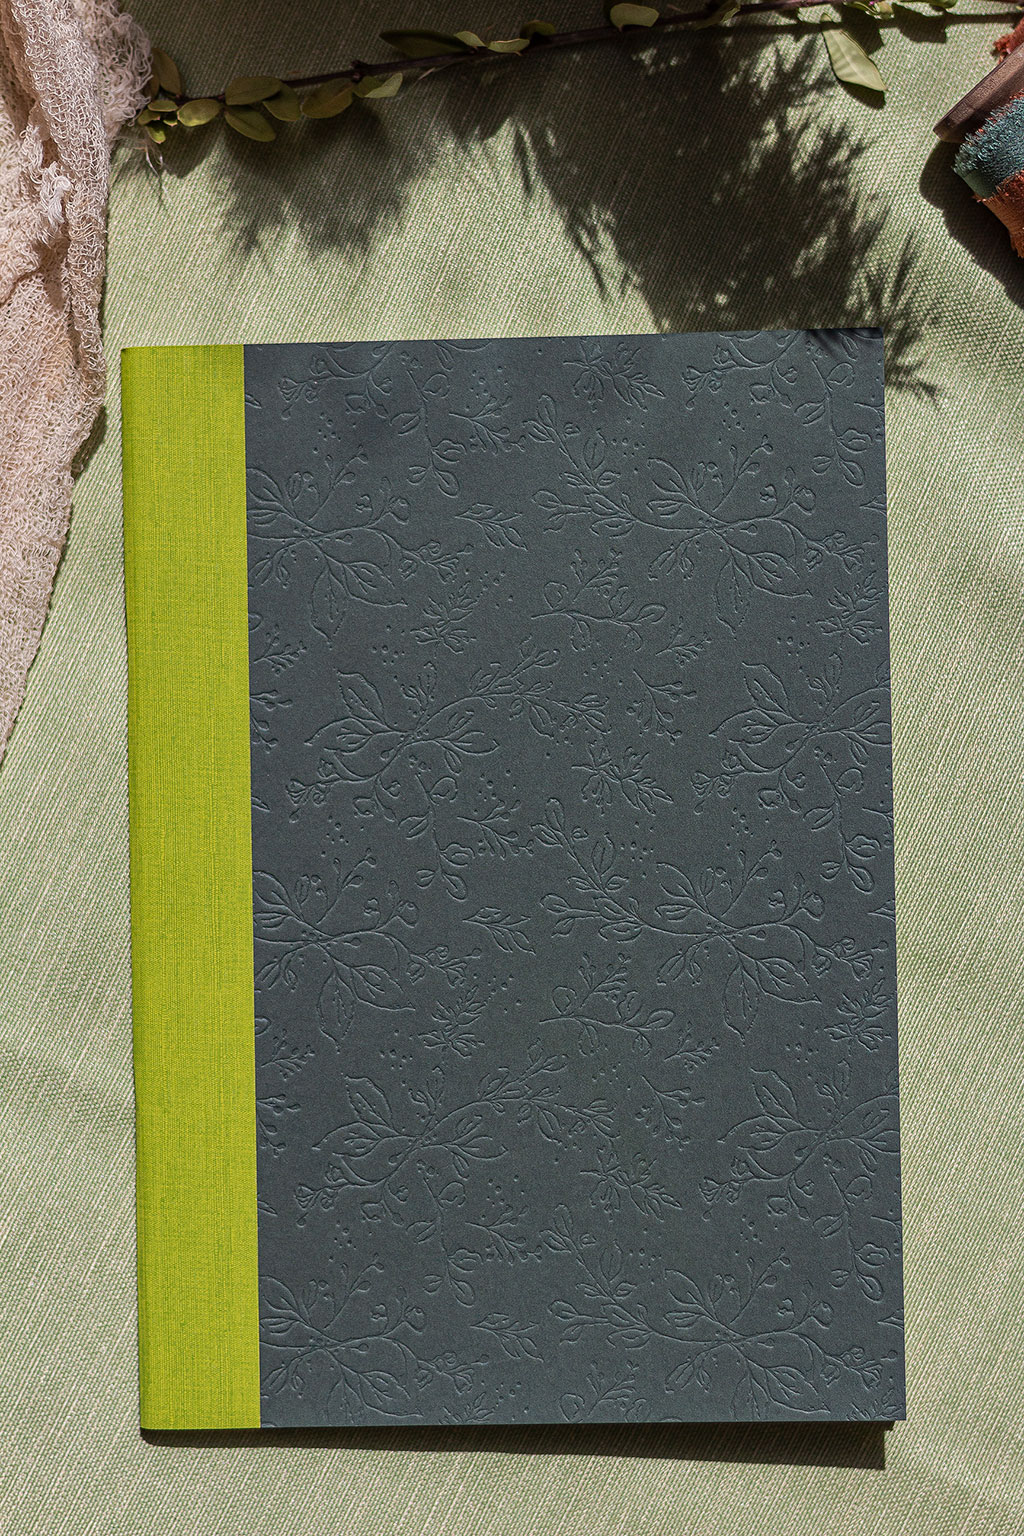 Mezeivirágos füzet feny-lime borítóval vaknyomással és gerincvászonnal díszítve, A/5-ös méretben 64 oldalas terjedelemben, 9 különböző színkombinációban